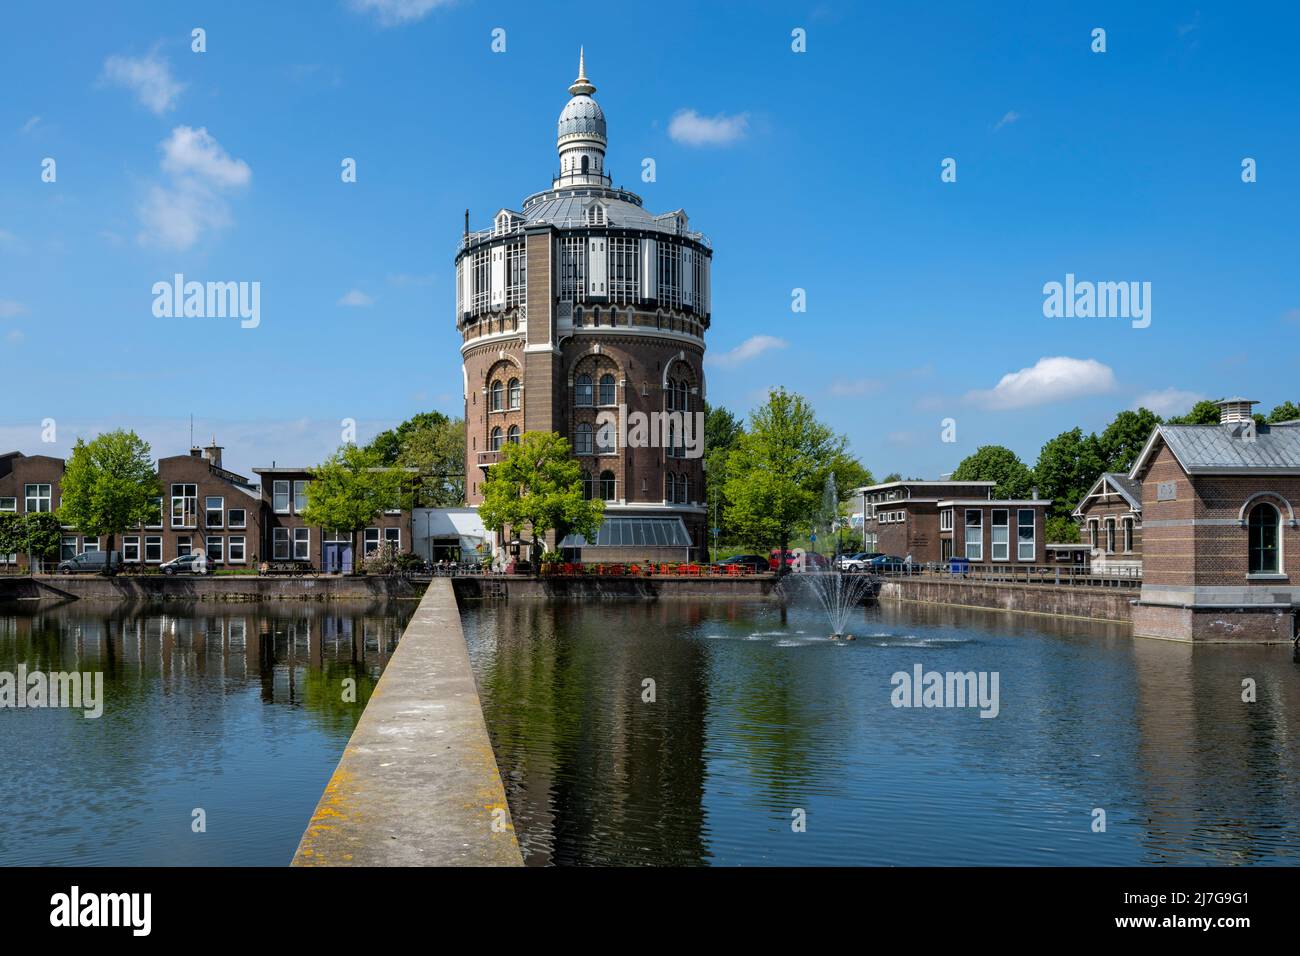 L'ex area dell'acqua potabile con la famosa torre dell'acqua si trova nell'Esch di Rotterdam. E' monumentale e attrae molti turisti. Foto Stock